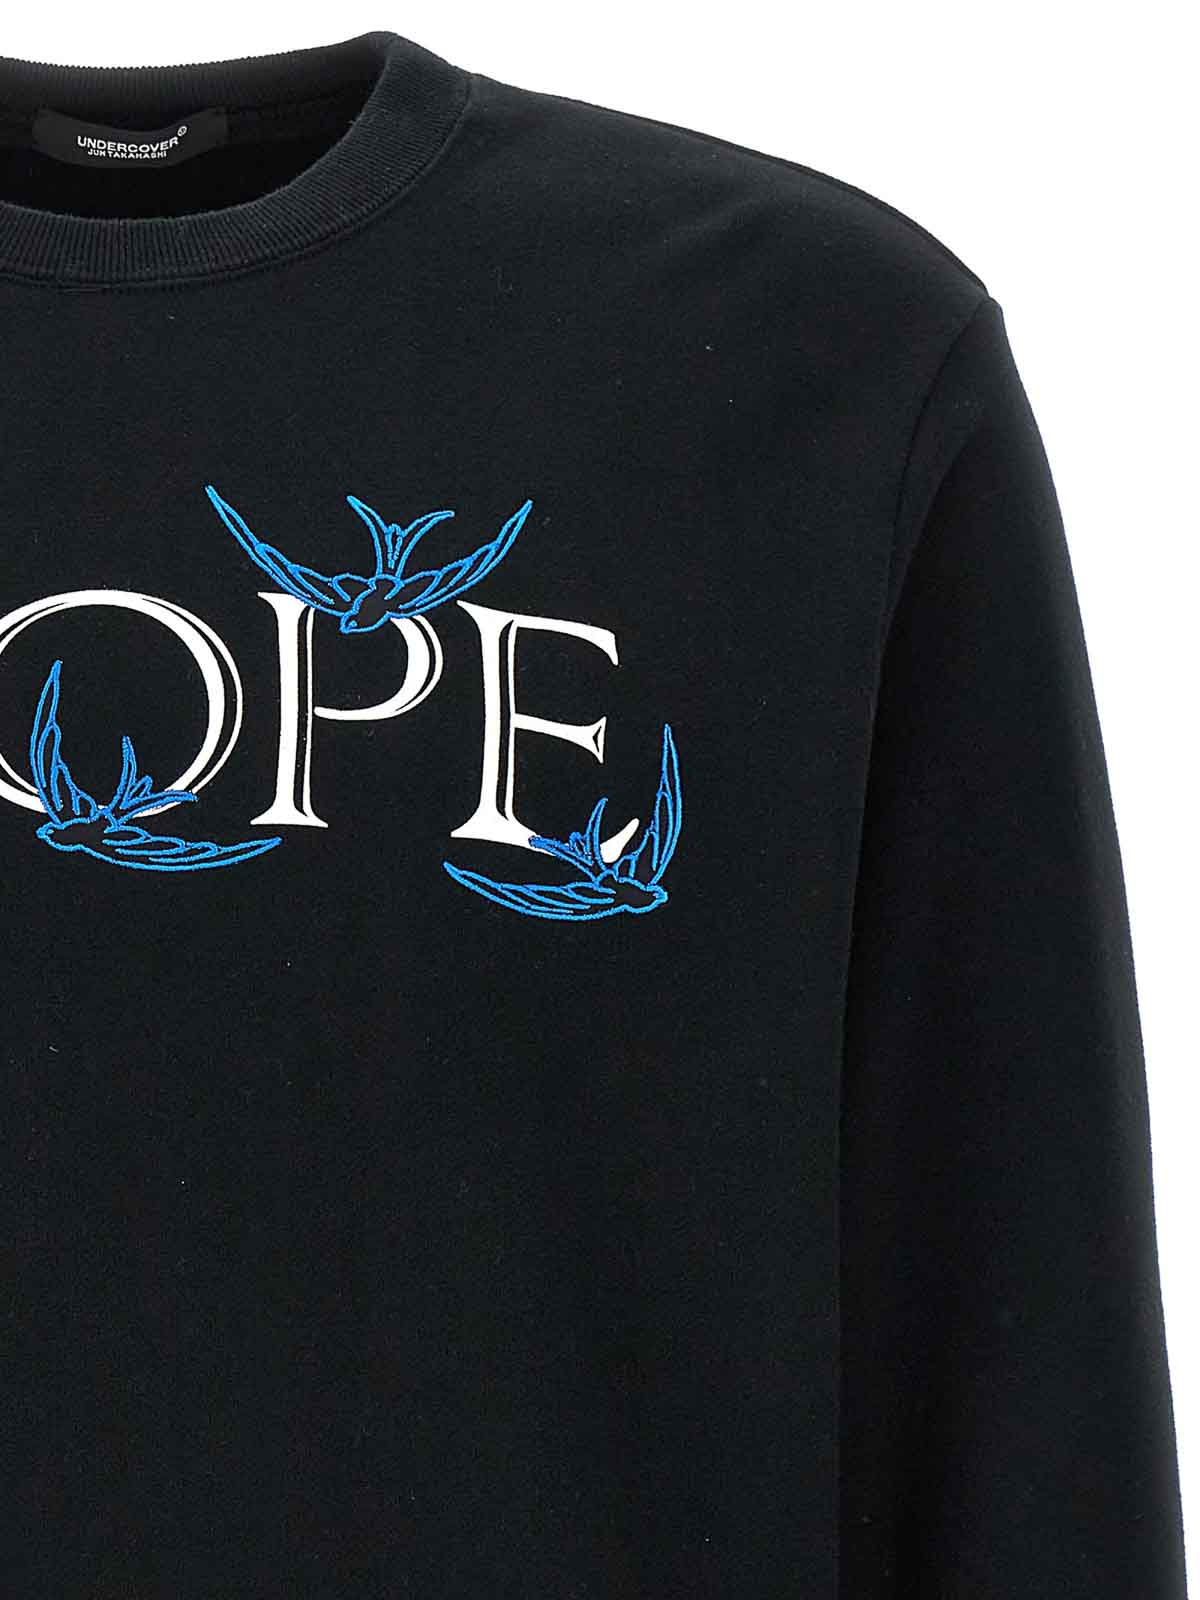 Shop Undercover Cotton Sweatshirt 'nope' Print In Black